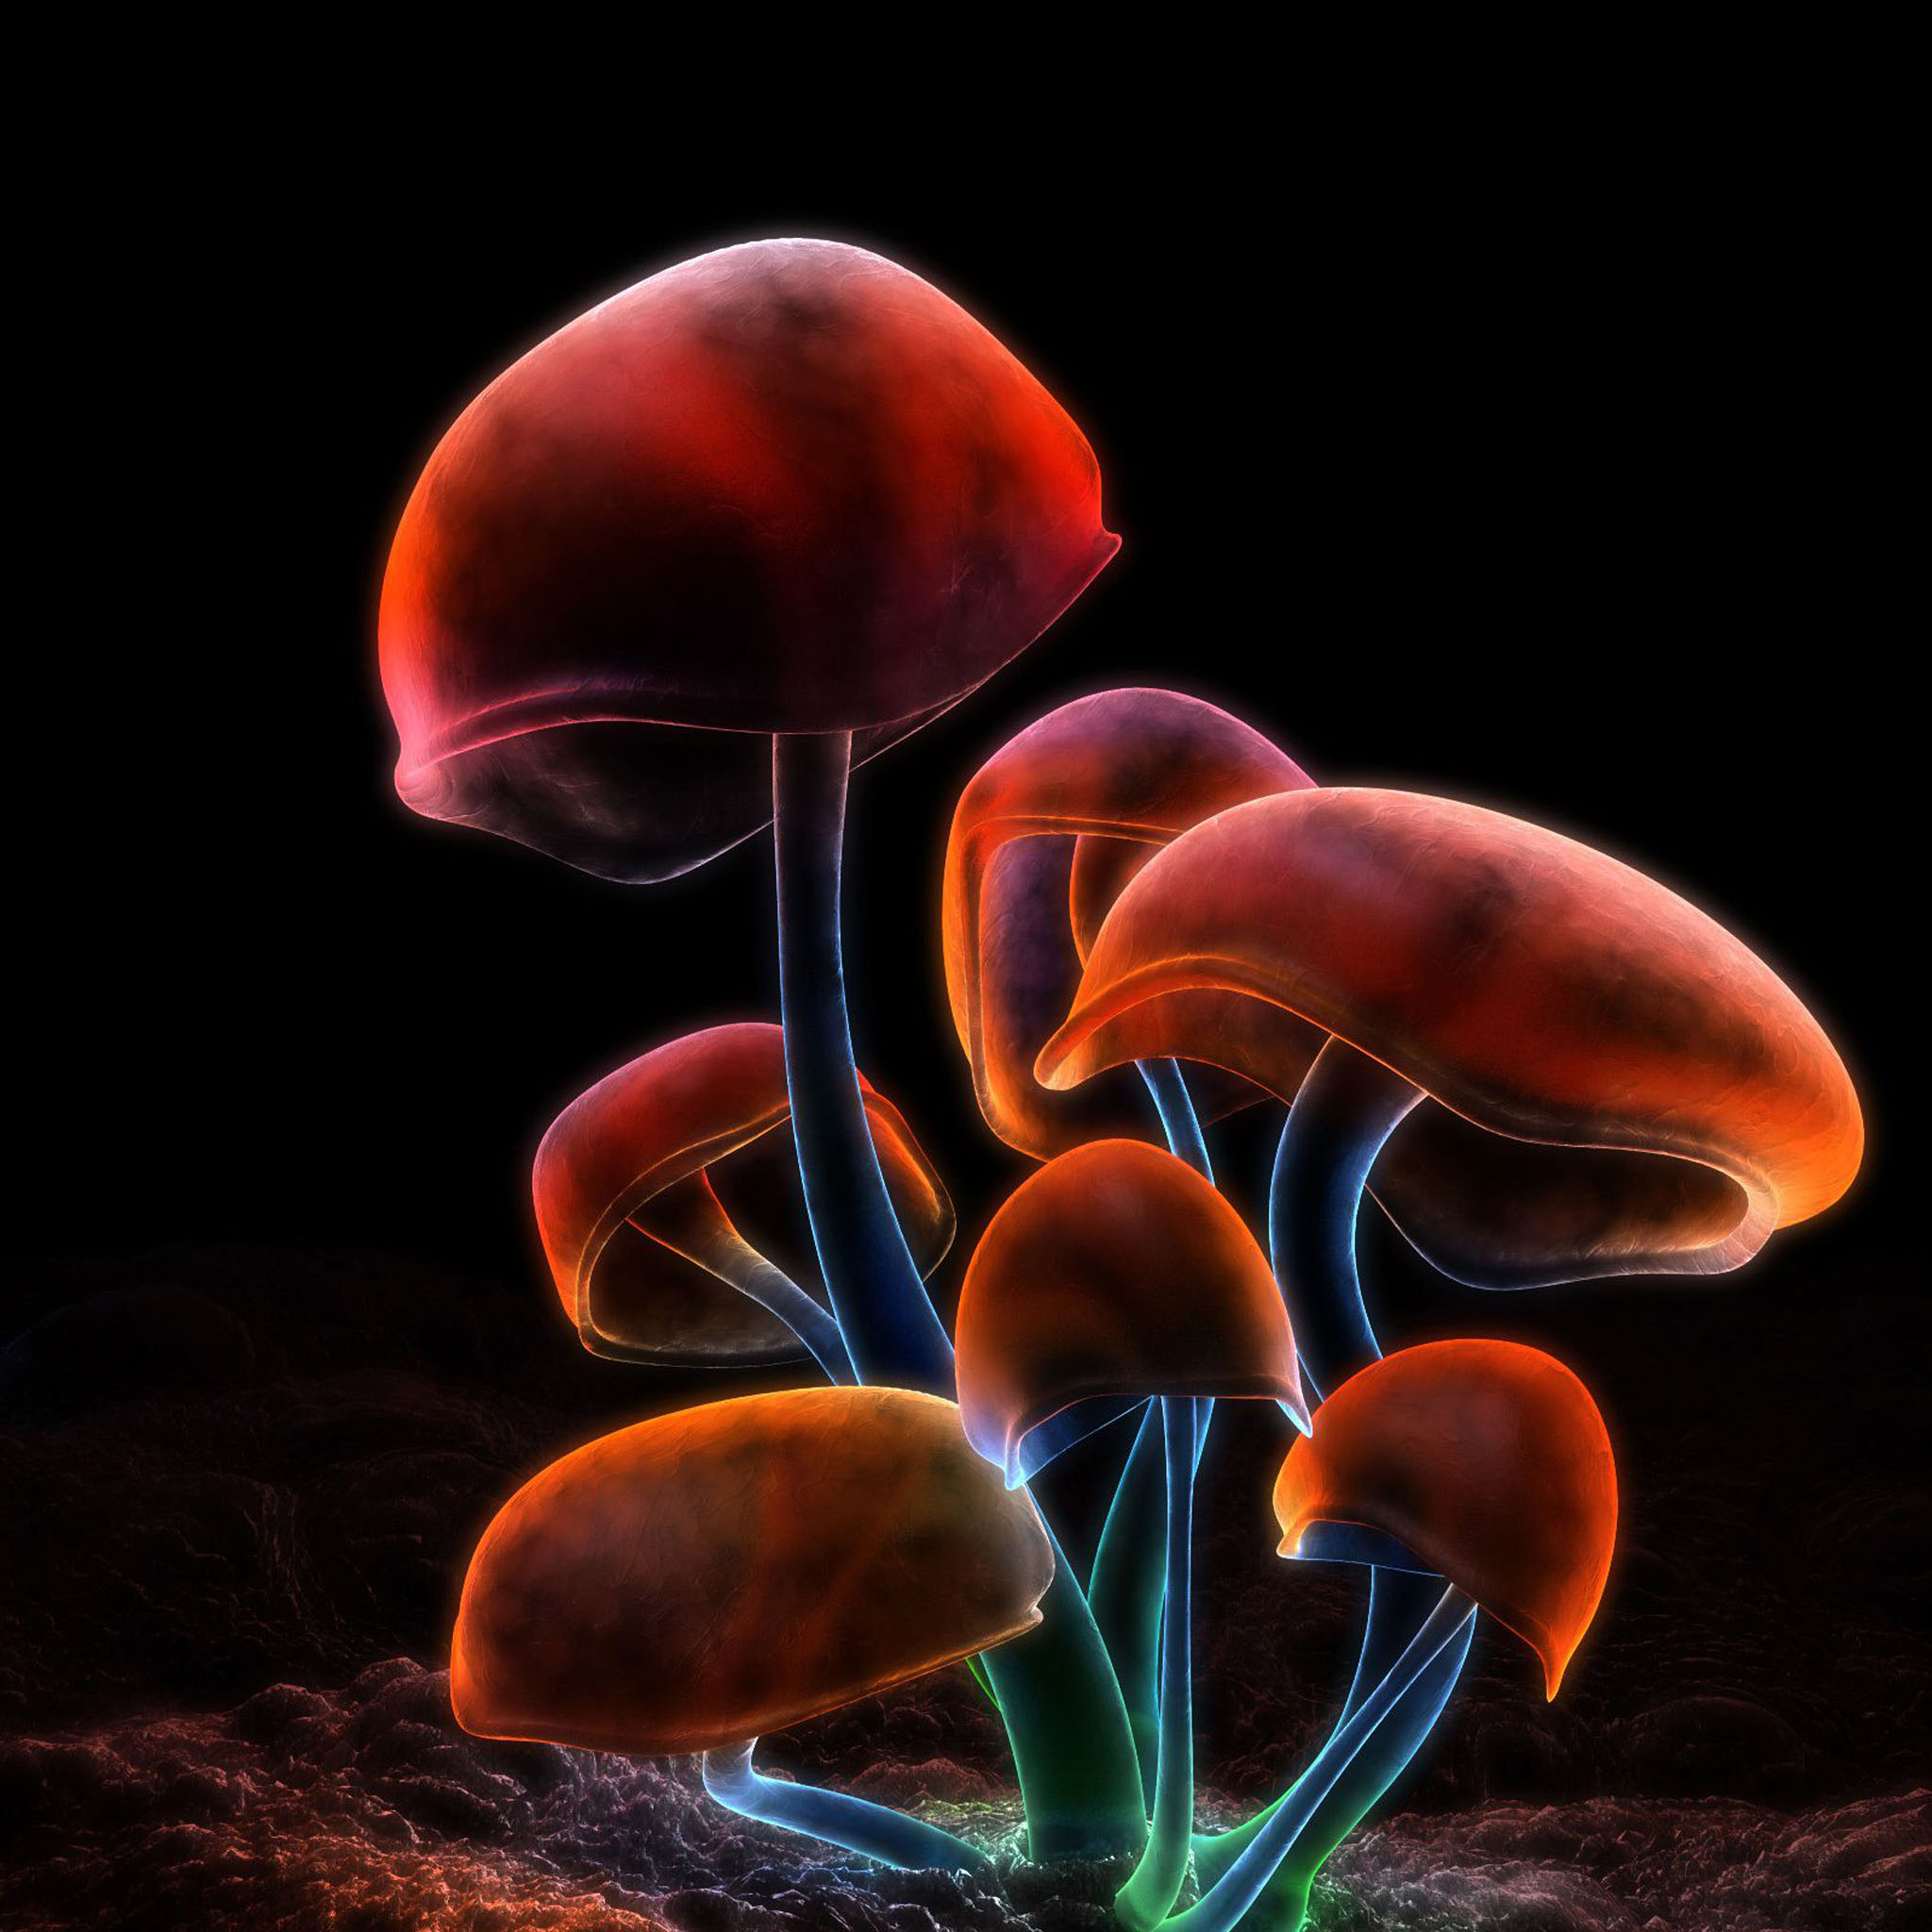 fond d'écran numérique pour mobile,champignon,champignon médicinal,champignon,champignon comestible,photographie de nature morte